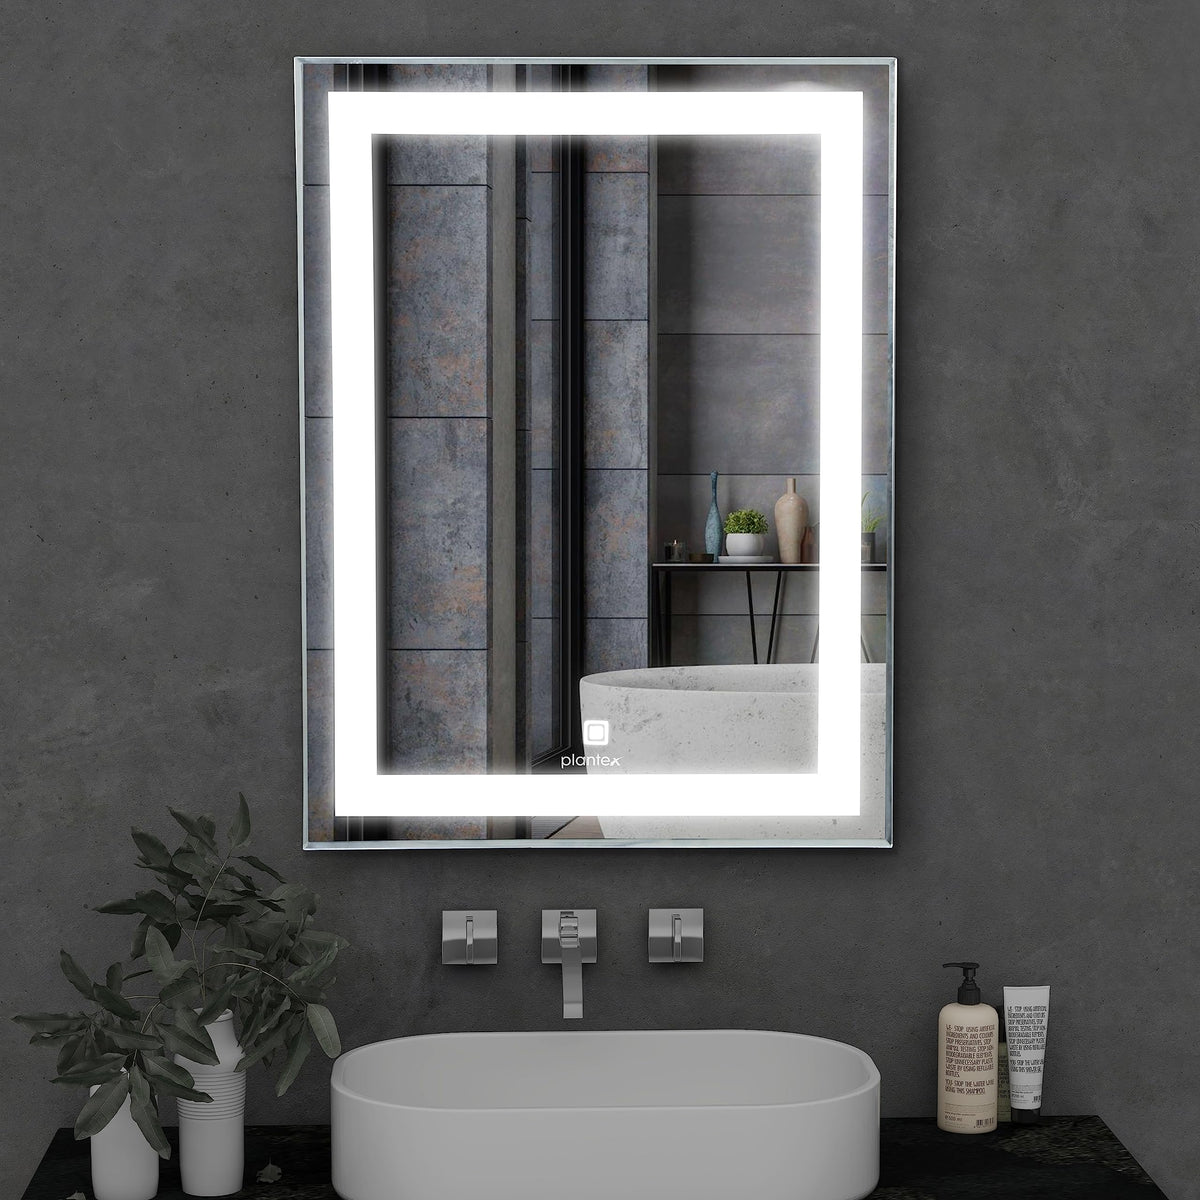 Plantex LED Mirror Glass with Sensor for Bathroom/Single Tone Light(White Light)/Designer Mirror for Living Room/Bedroom/Dressing Room – Rectangle Shape (18x24 inch)